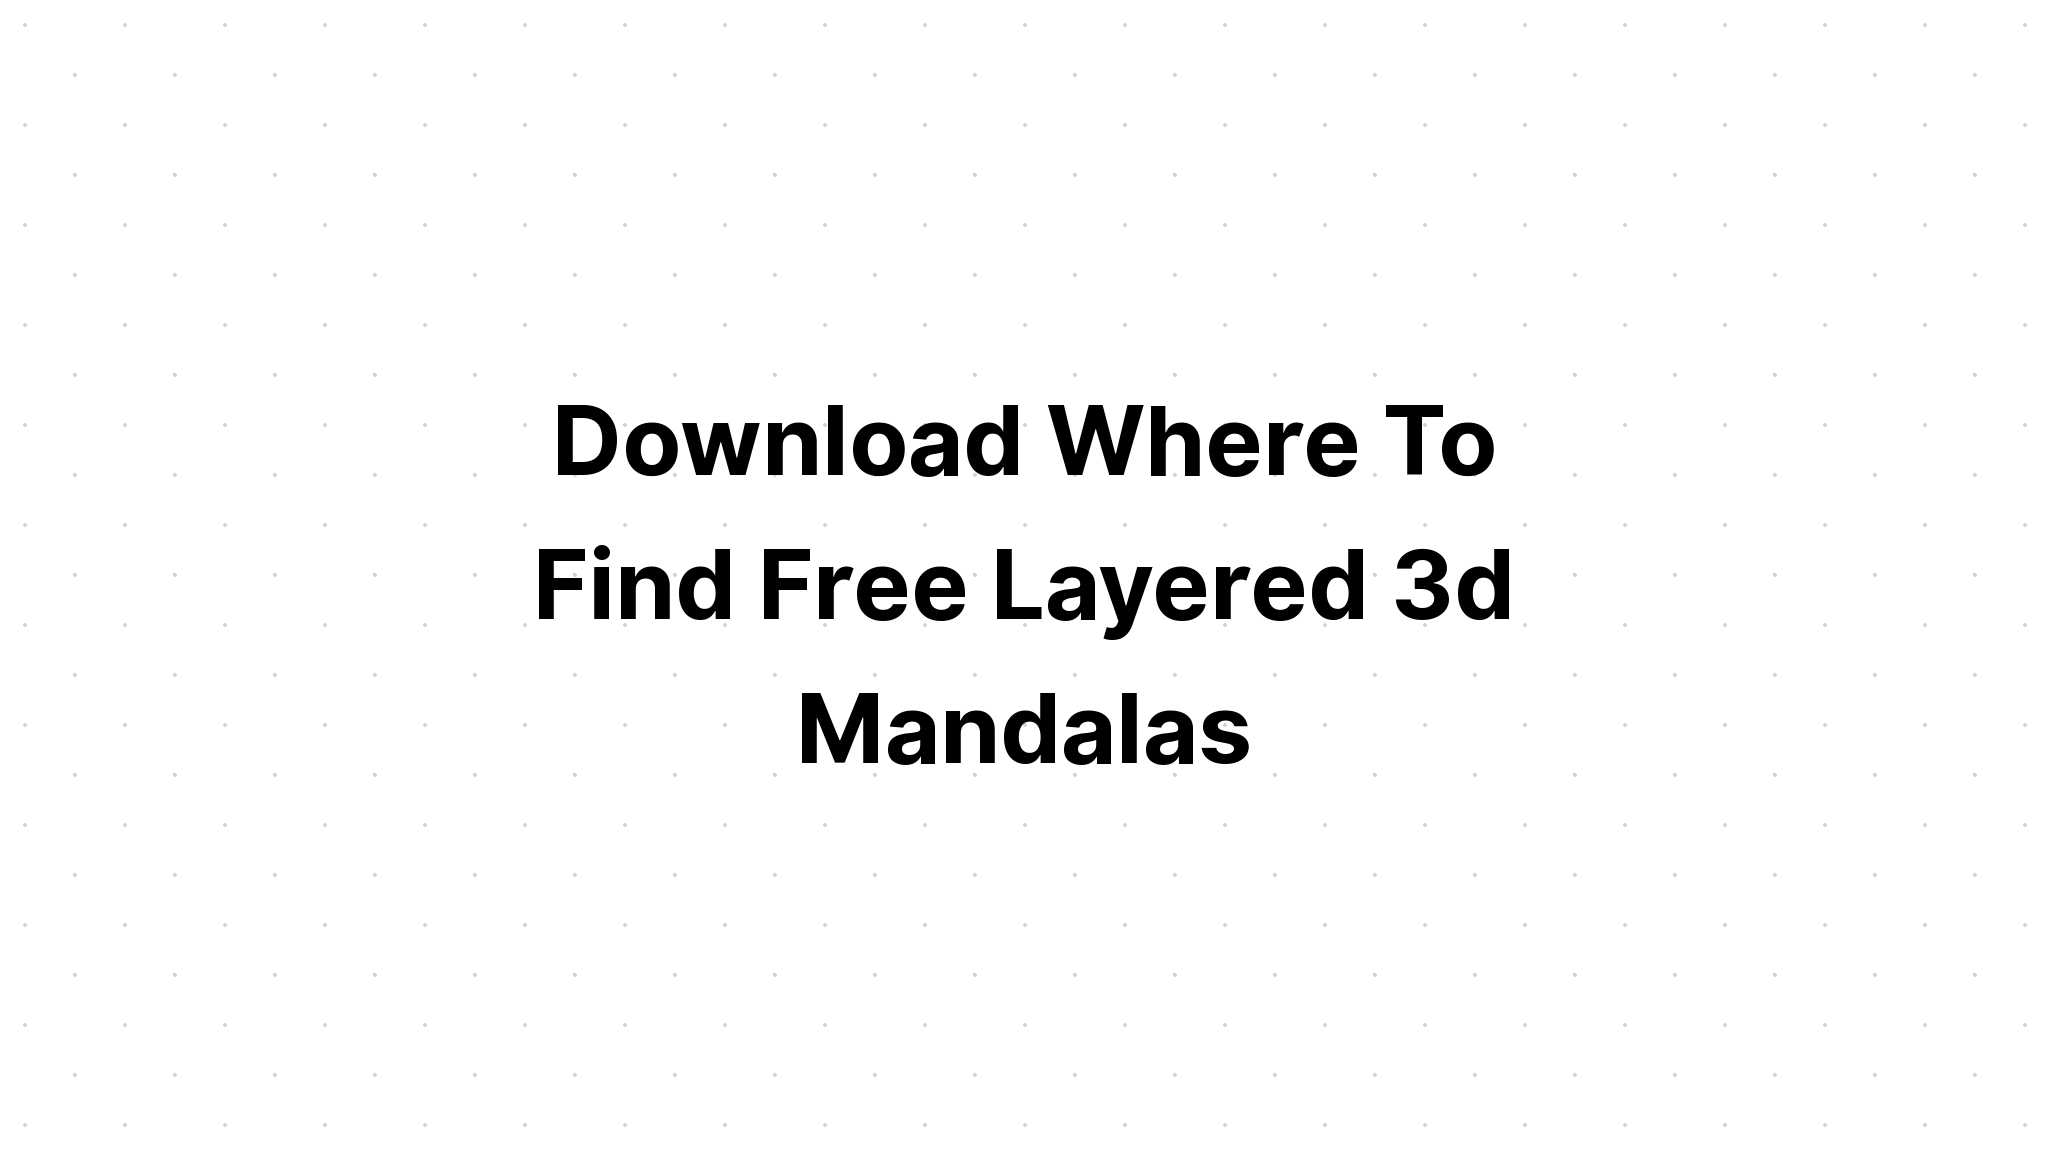 Download 3D Multi Layered Mandala Layered Svg Free - Layered SVG Cut File